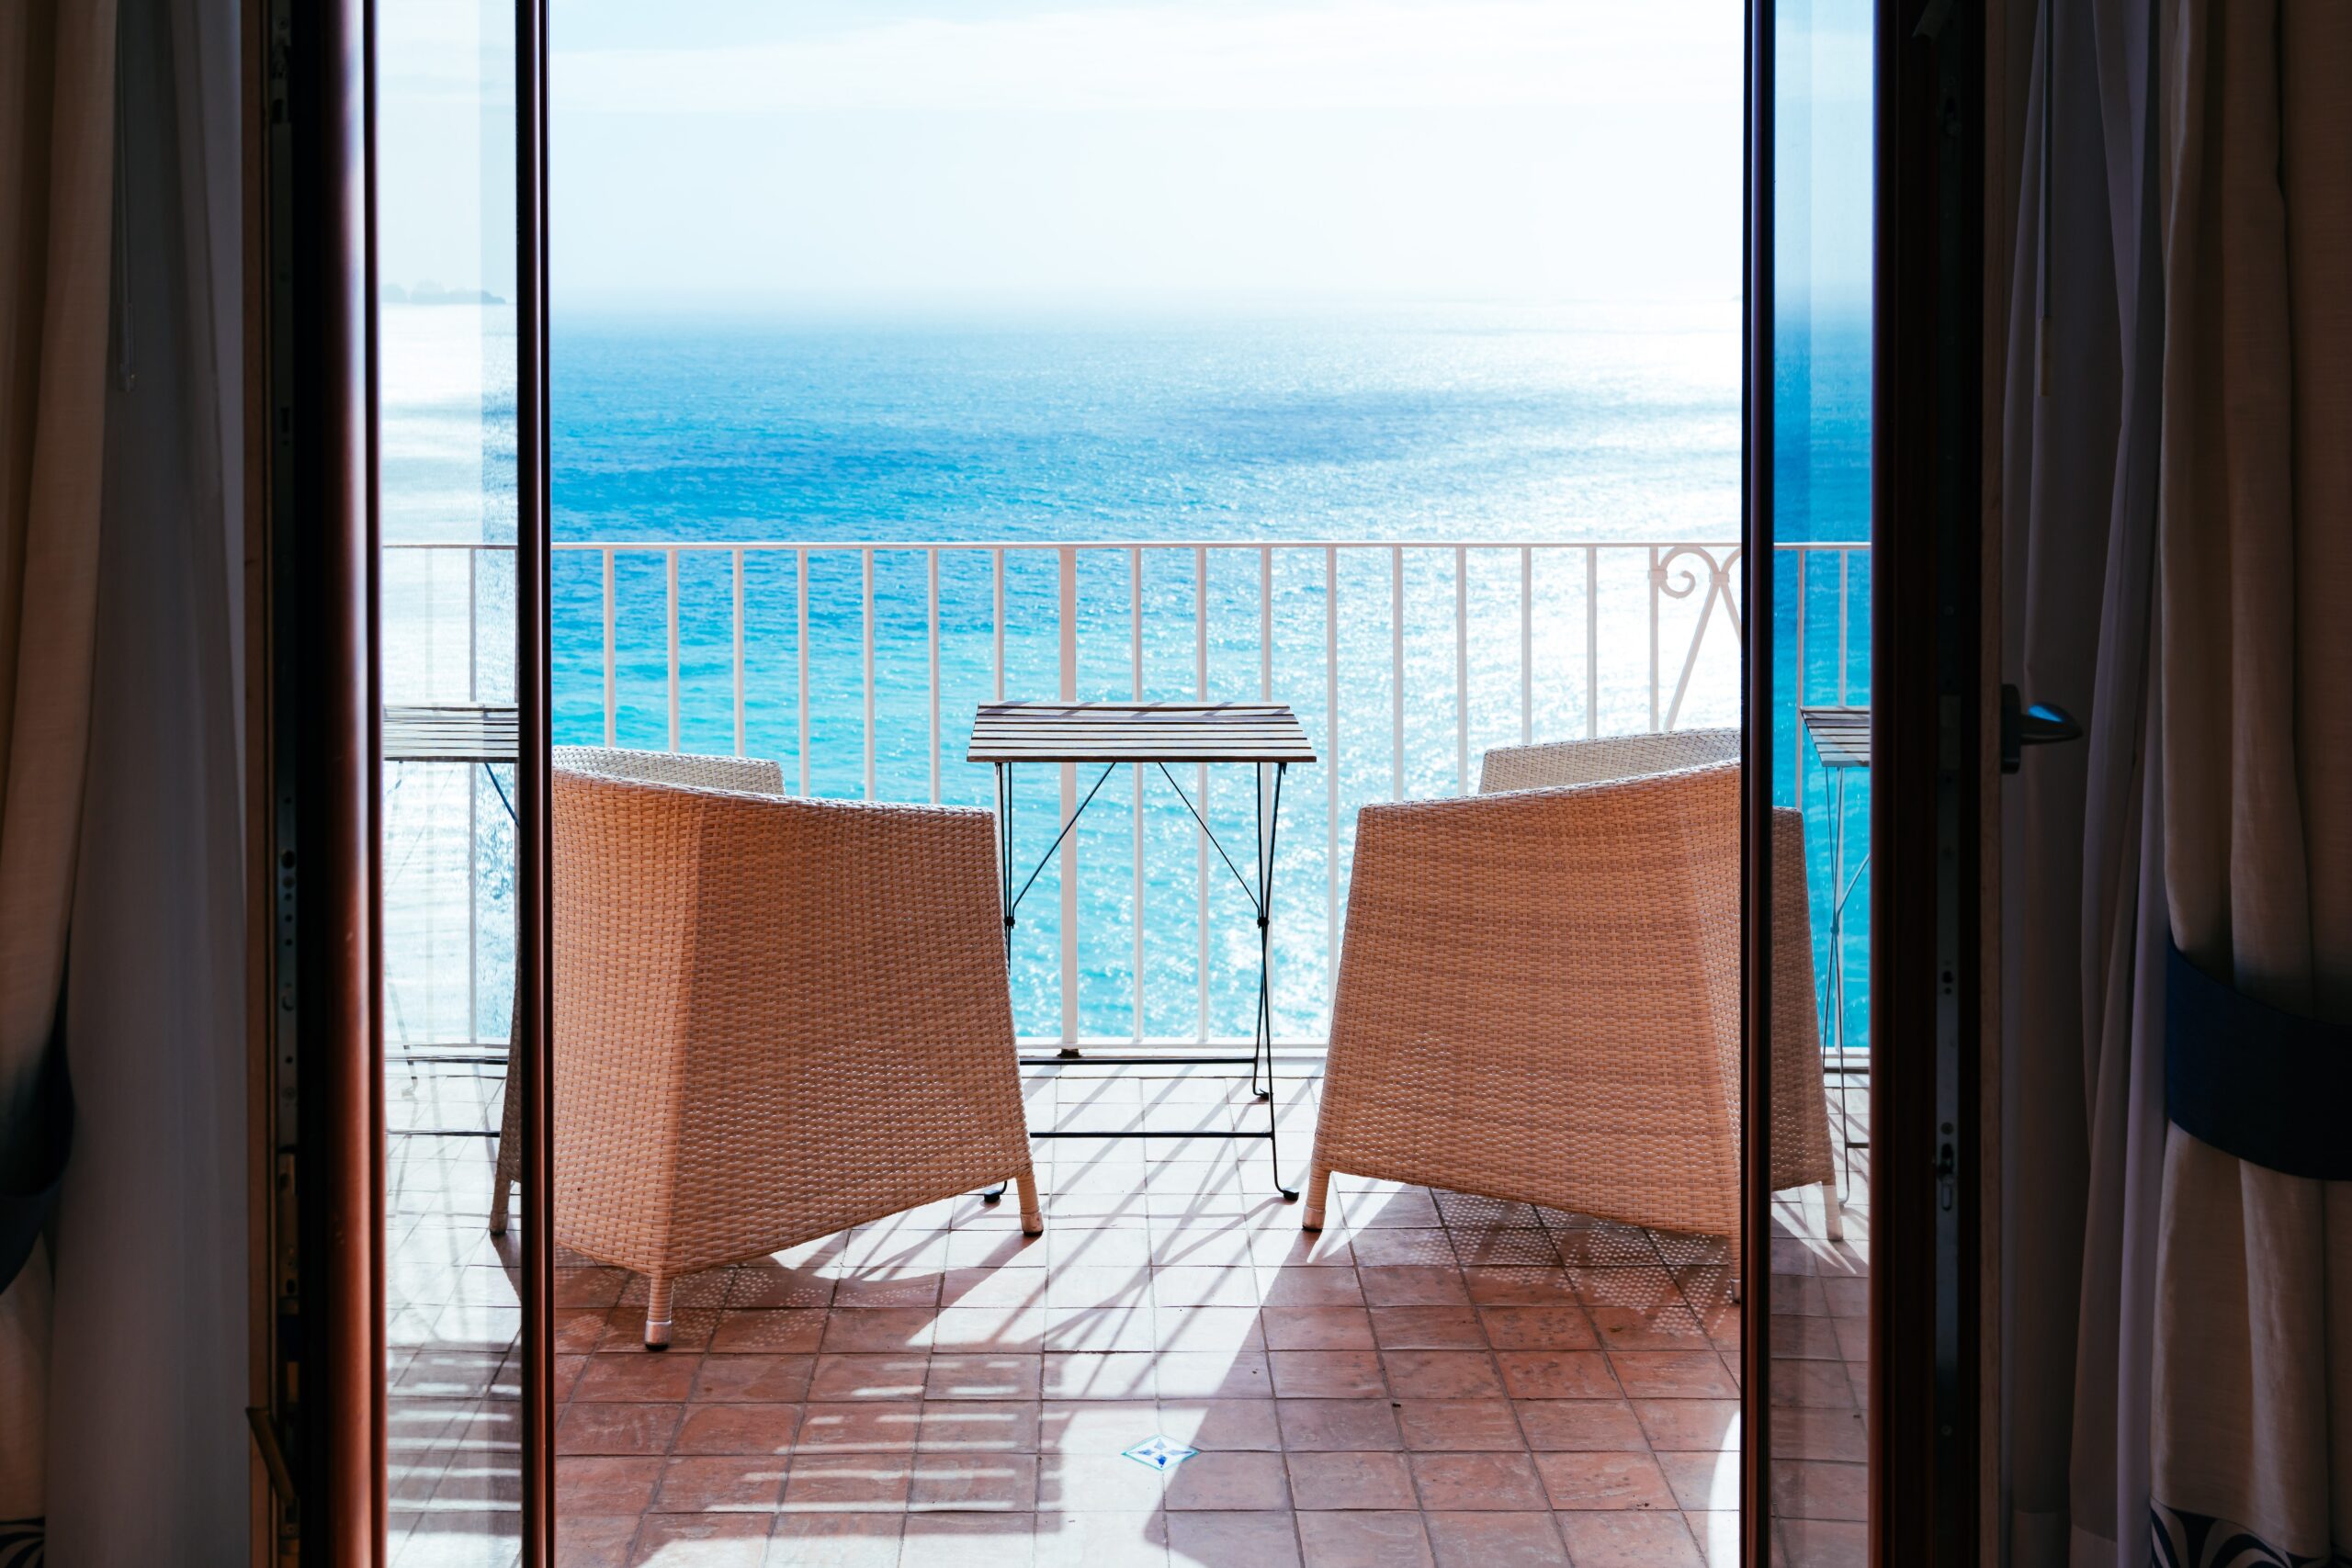 Balcony overlooking the sea